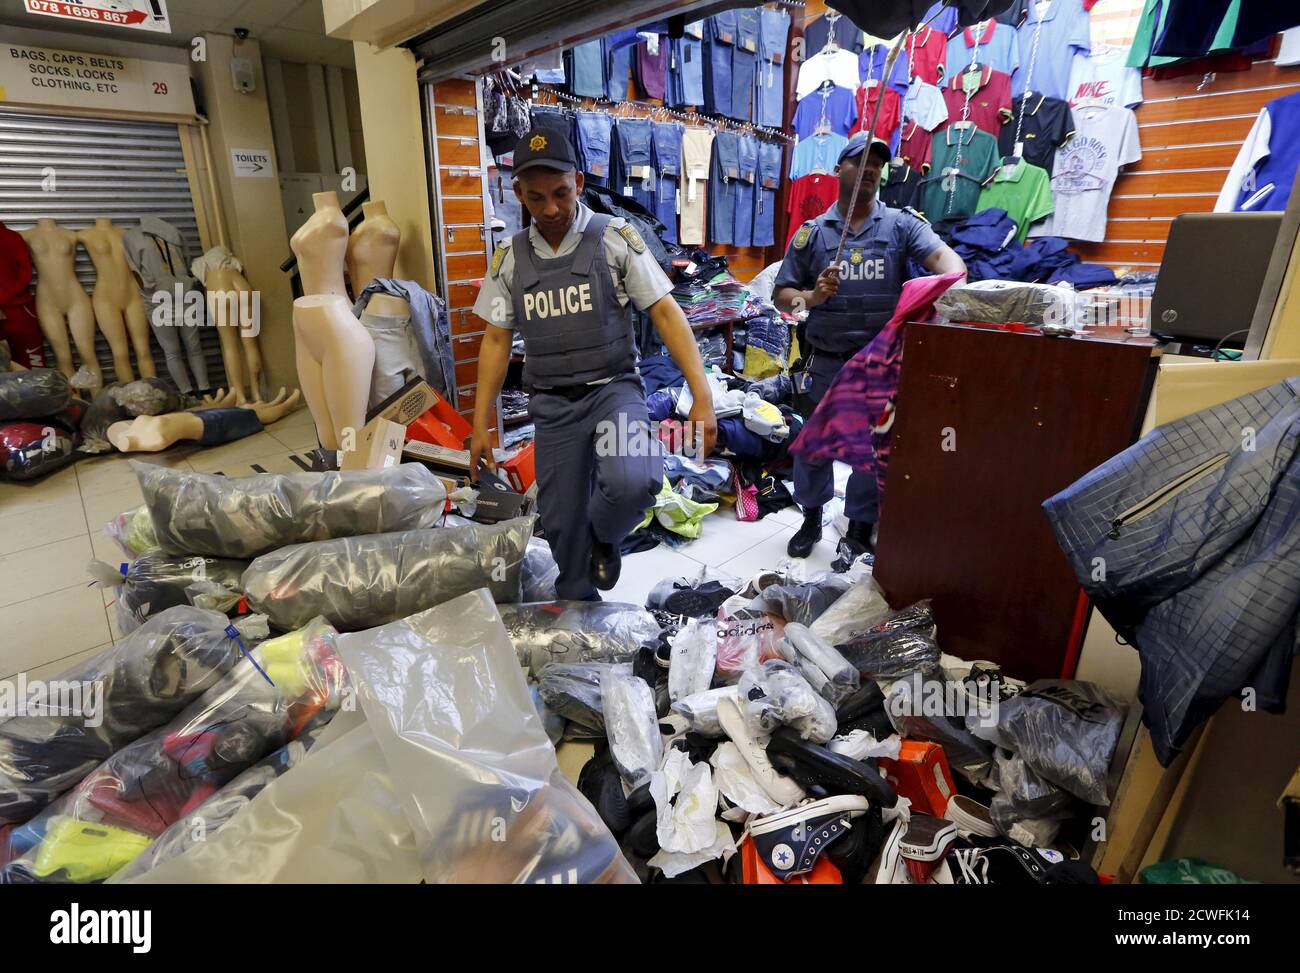 La polizia si è accanita contro pile di capi di abbigliamento sospetti  contraffatti durante un raid a Città del Capo, Sud Africa, 7 maggio 2015.  L'incursione, durante la quale è stata condotta